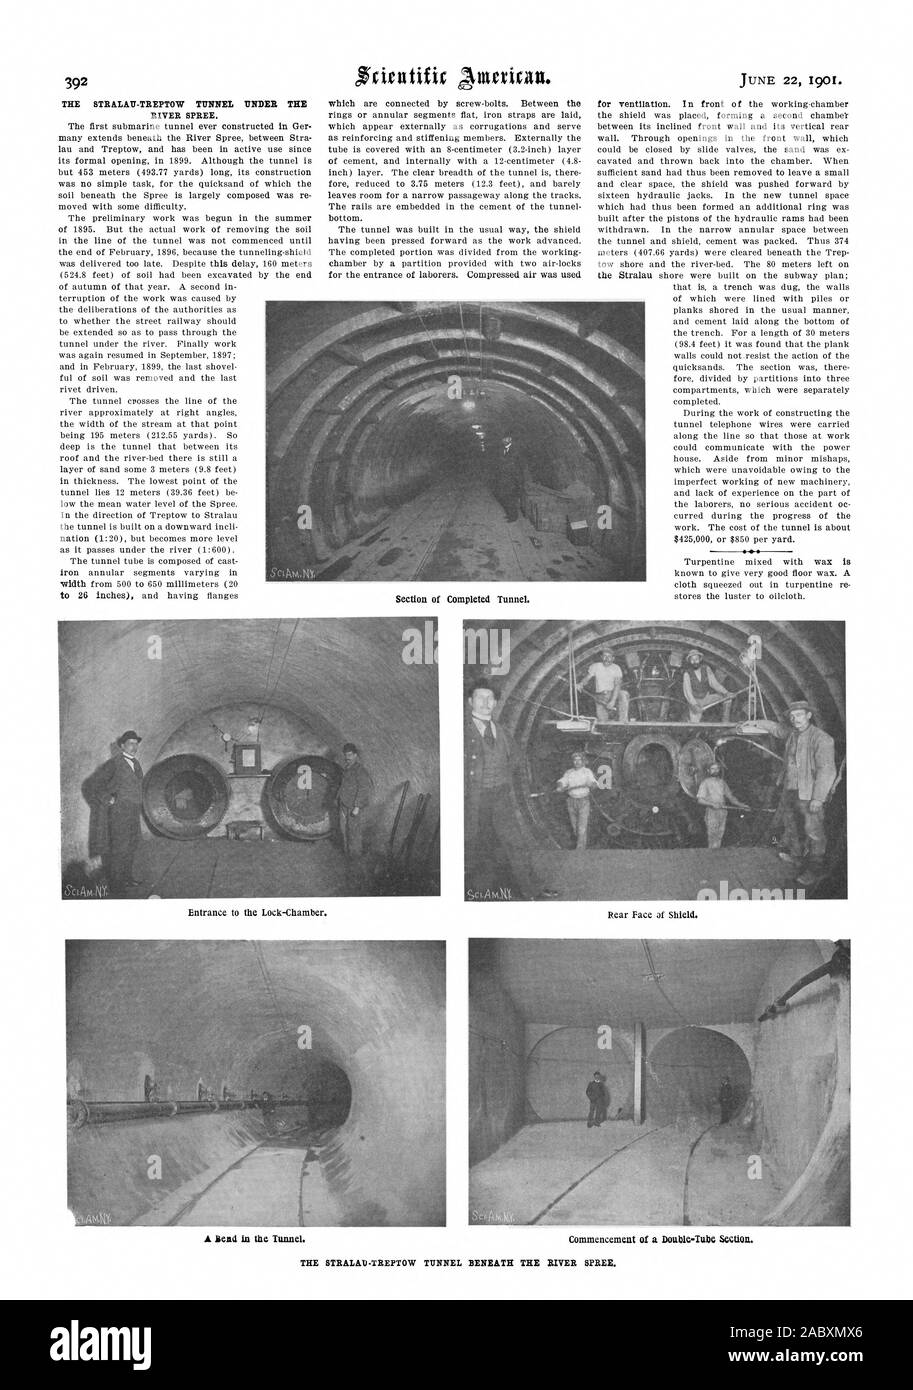 Die STRALAU - TREPTOW TUNNEL UNTER DER SPREE. Die erste U-Boot Tunnel, die je in Deutschland gebaut Viele erstreckt sich unterhalb der Spree zwischen Stra lau und Treptow und hat seit seiner offiziellen Eröffnung im Jahr 1899 im aktiven Einsatz. Obwohl der Tunnel ist aber 453 Meter (Yards) 493.77 Lange seine Konstruktion war keine einfache Aufgabe für den Treibsand der Boden unter der Spree ist weitgehend komponiert wurde mit einigen Schwierigkeiten verschoben. Die Vorarbeit wurde im Sommer 1895 begonnen. Aber die eigentliche Arbeit der Ausbau des Bodens in der Zeile der Tunnel wurde nicht begonnen, bis Ende Februar 1896 Stockfoto